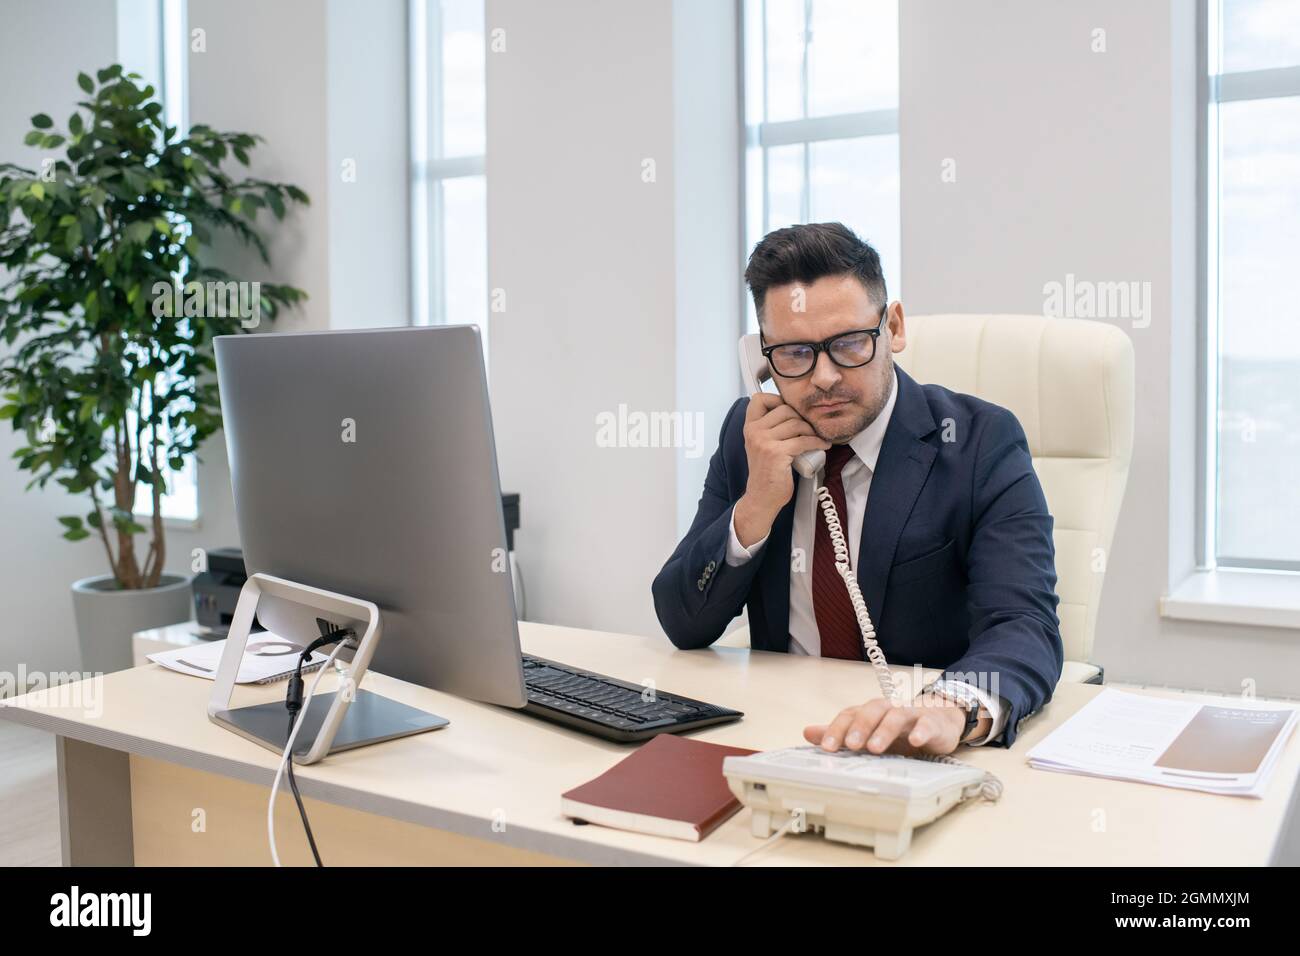 Homme d'affaires ou directeur d'entreprise en composant le numéro de téléphone de son lieu de travail au bureau Banque D'Images